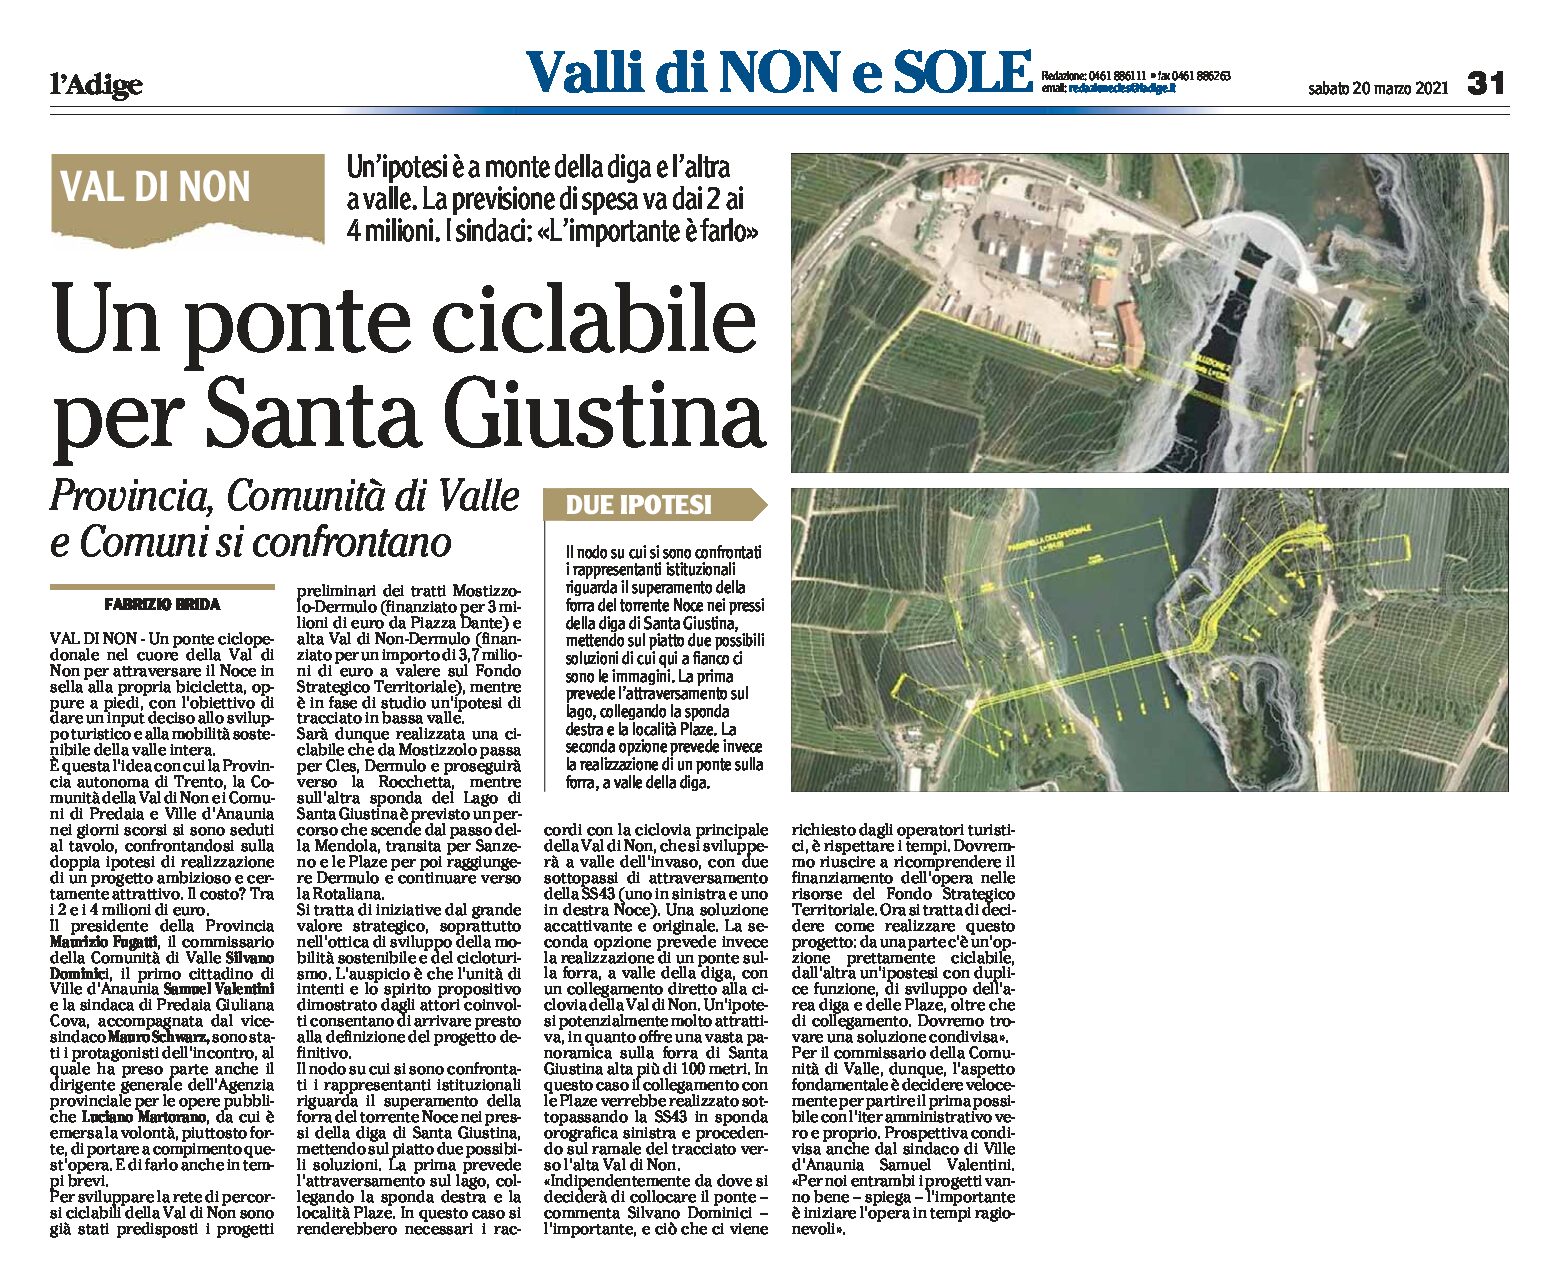 Val di Non: un ponte ciclabile per Santa Giustina